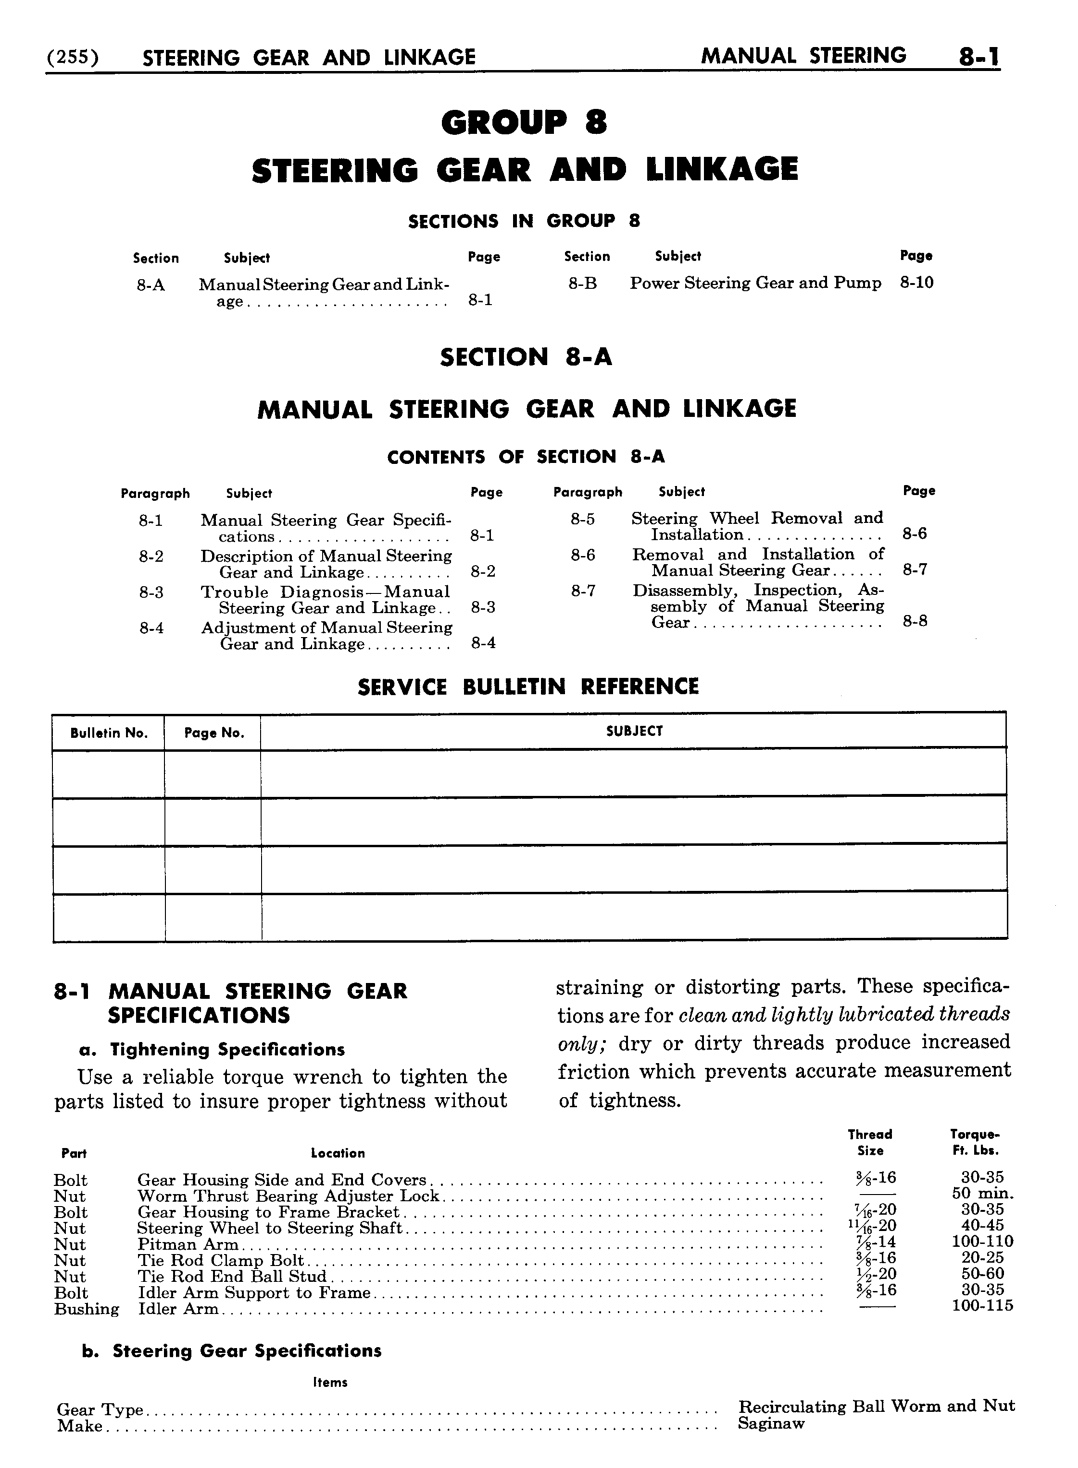 n_09 1954 Buick Shop Manual - Steering-001-001.jpg